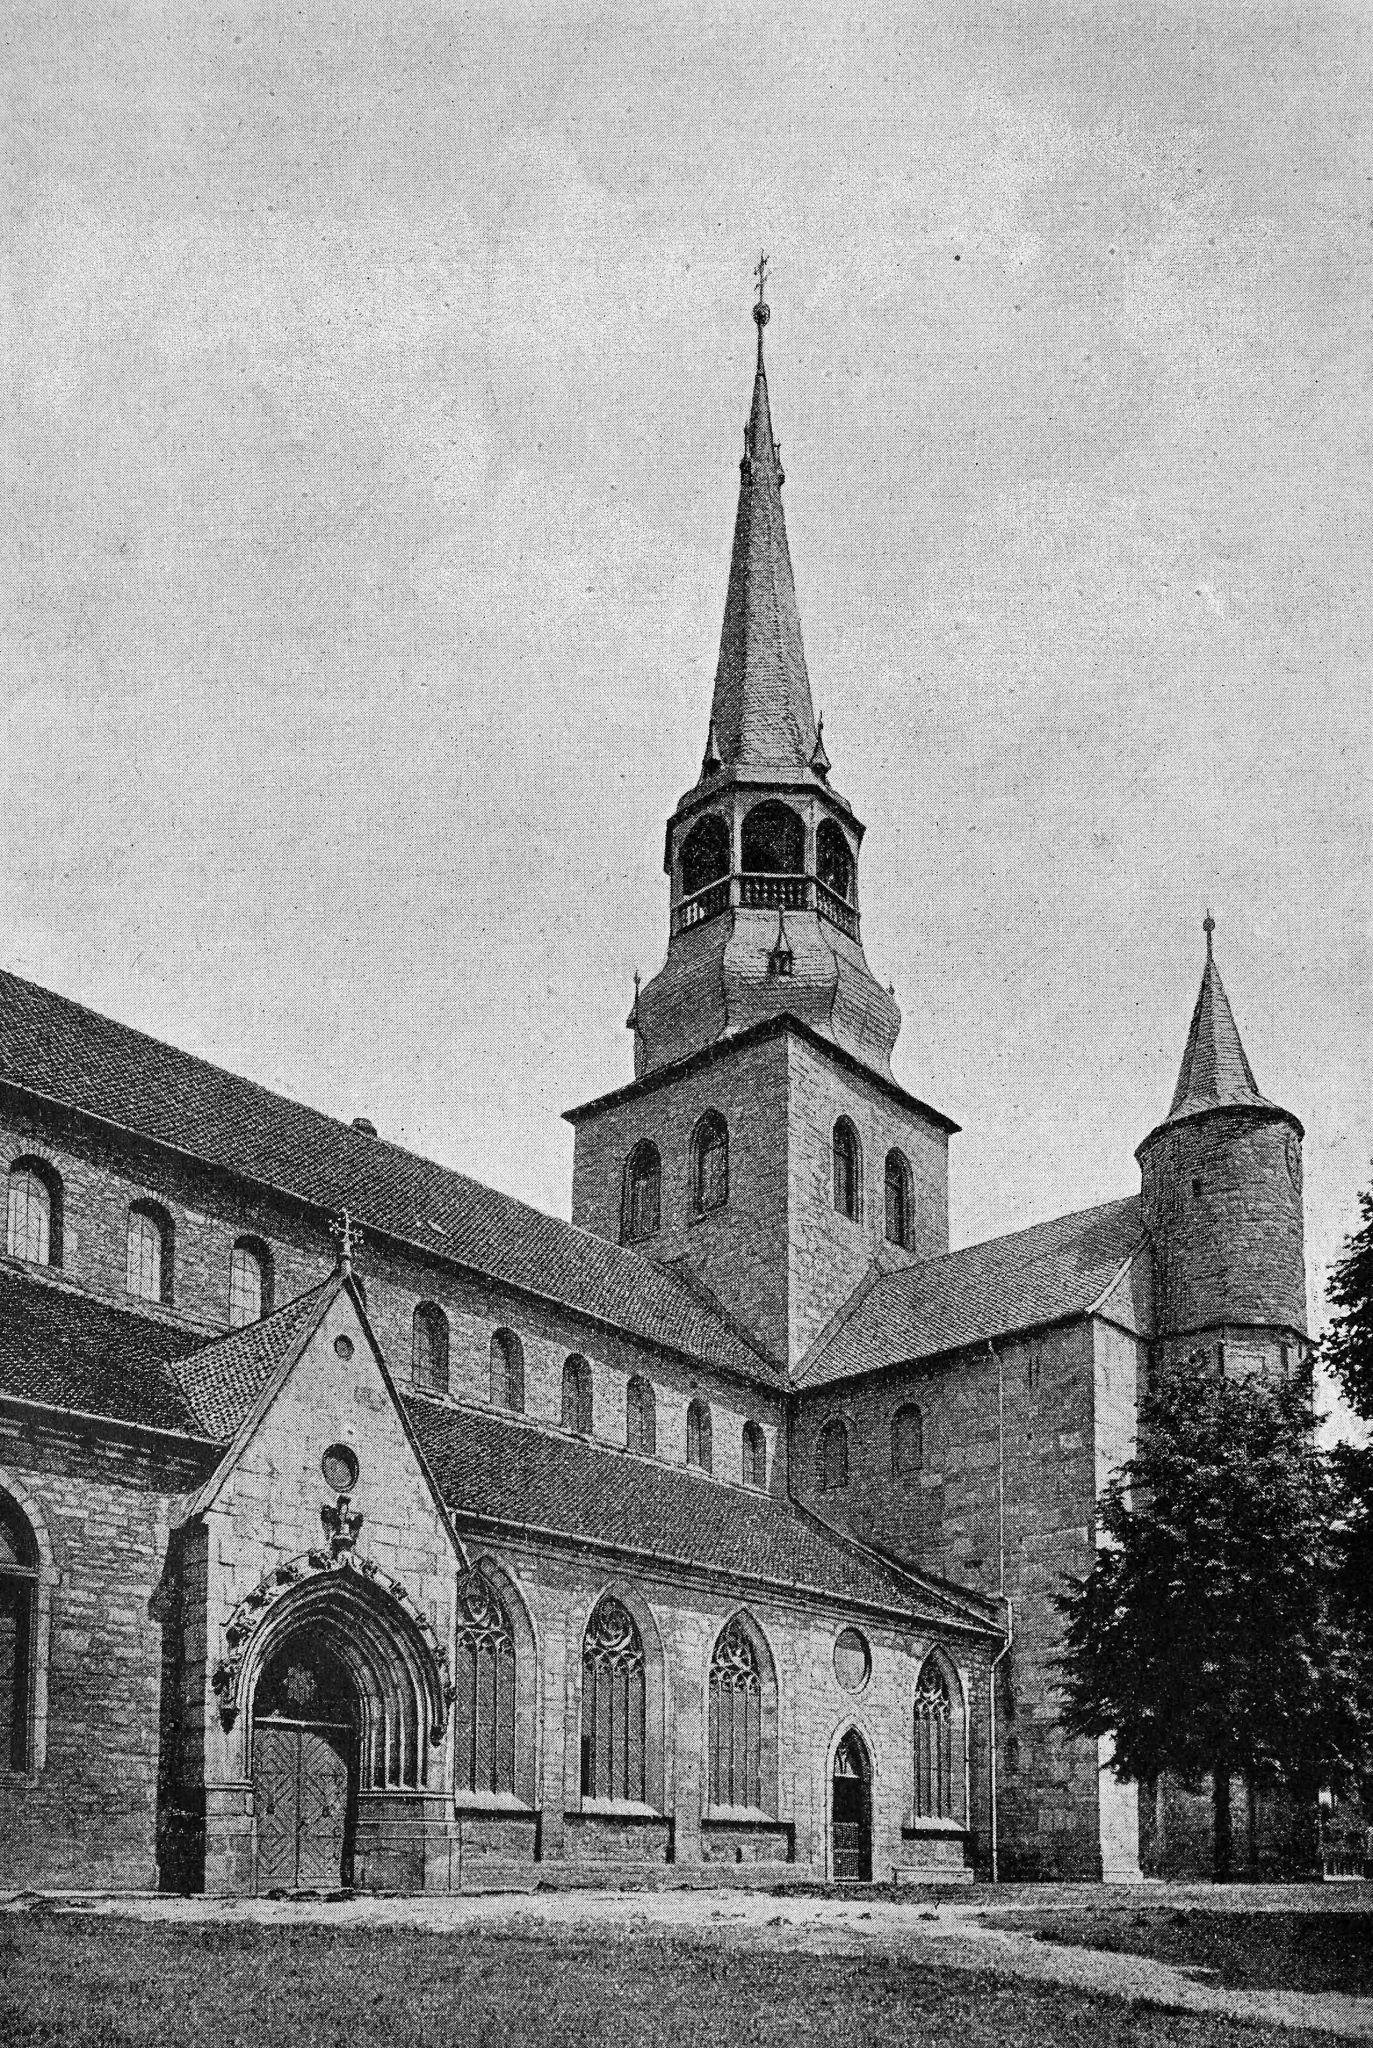 Michaeliskirche, Hildesheim, 1880.